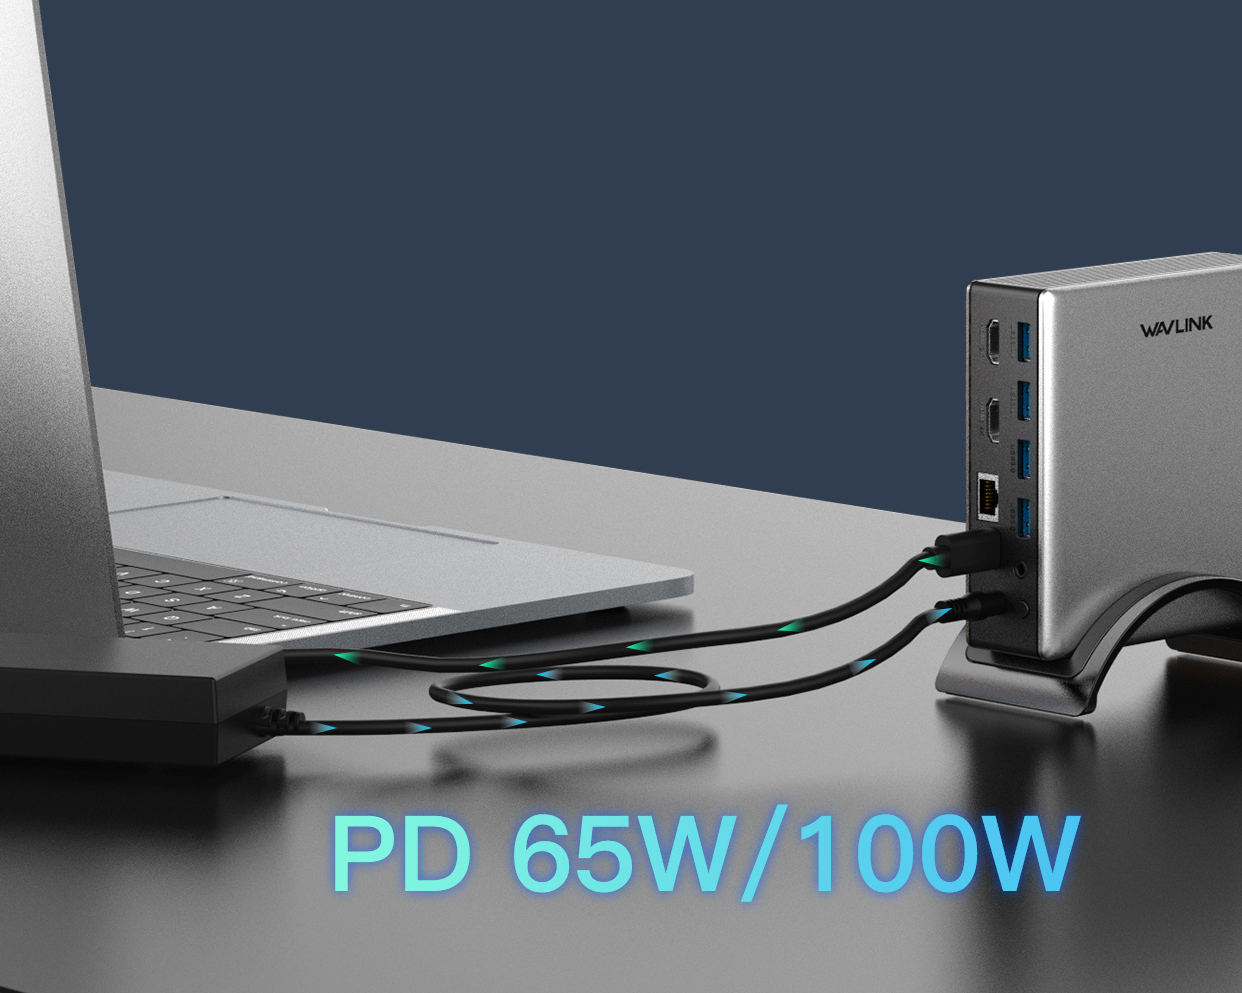 Universal USB-C Docking Station with 65W Power